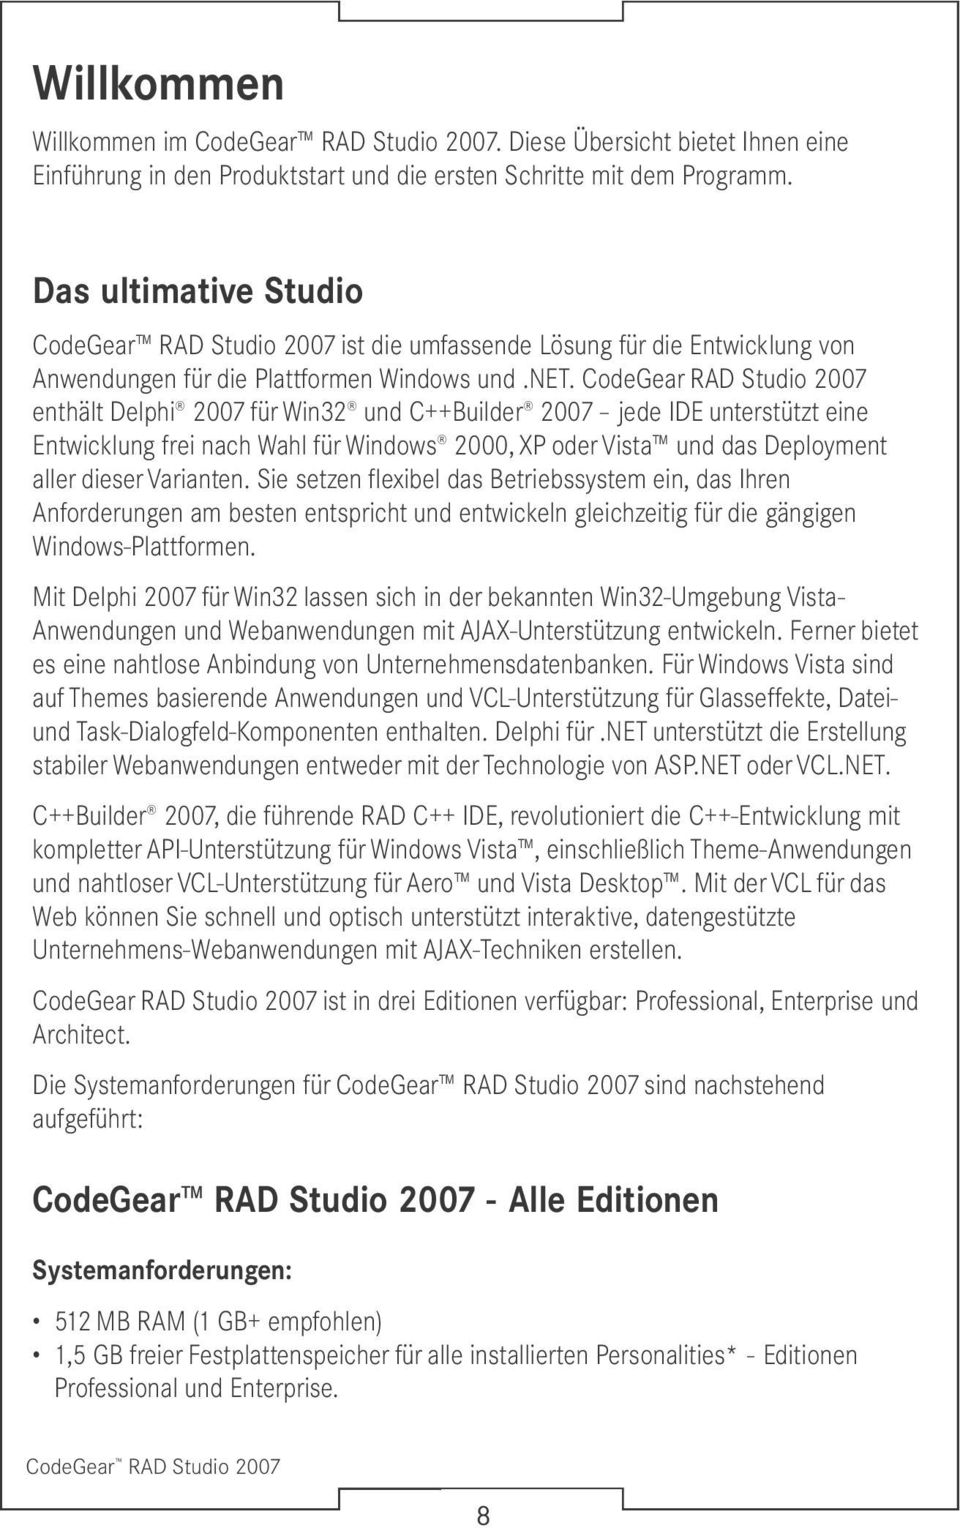 CodeGear RAD Studio 2007 enthält Delphi 2007 für Win32 und C++Builder 2007 jede IDE unterstützt eine Entwicklung frei nach Wahl für Windows 2000, XP oder Vista und das Deployment aller dieser